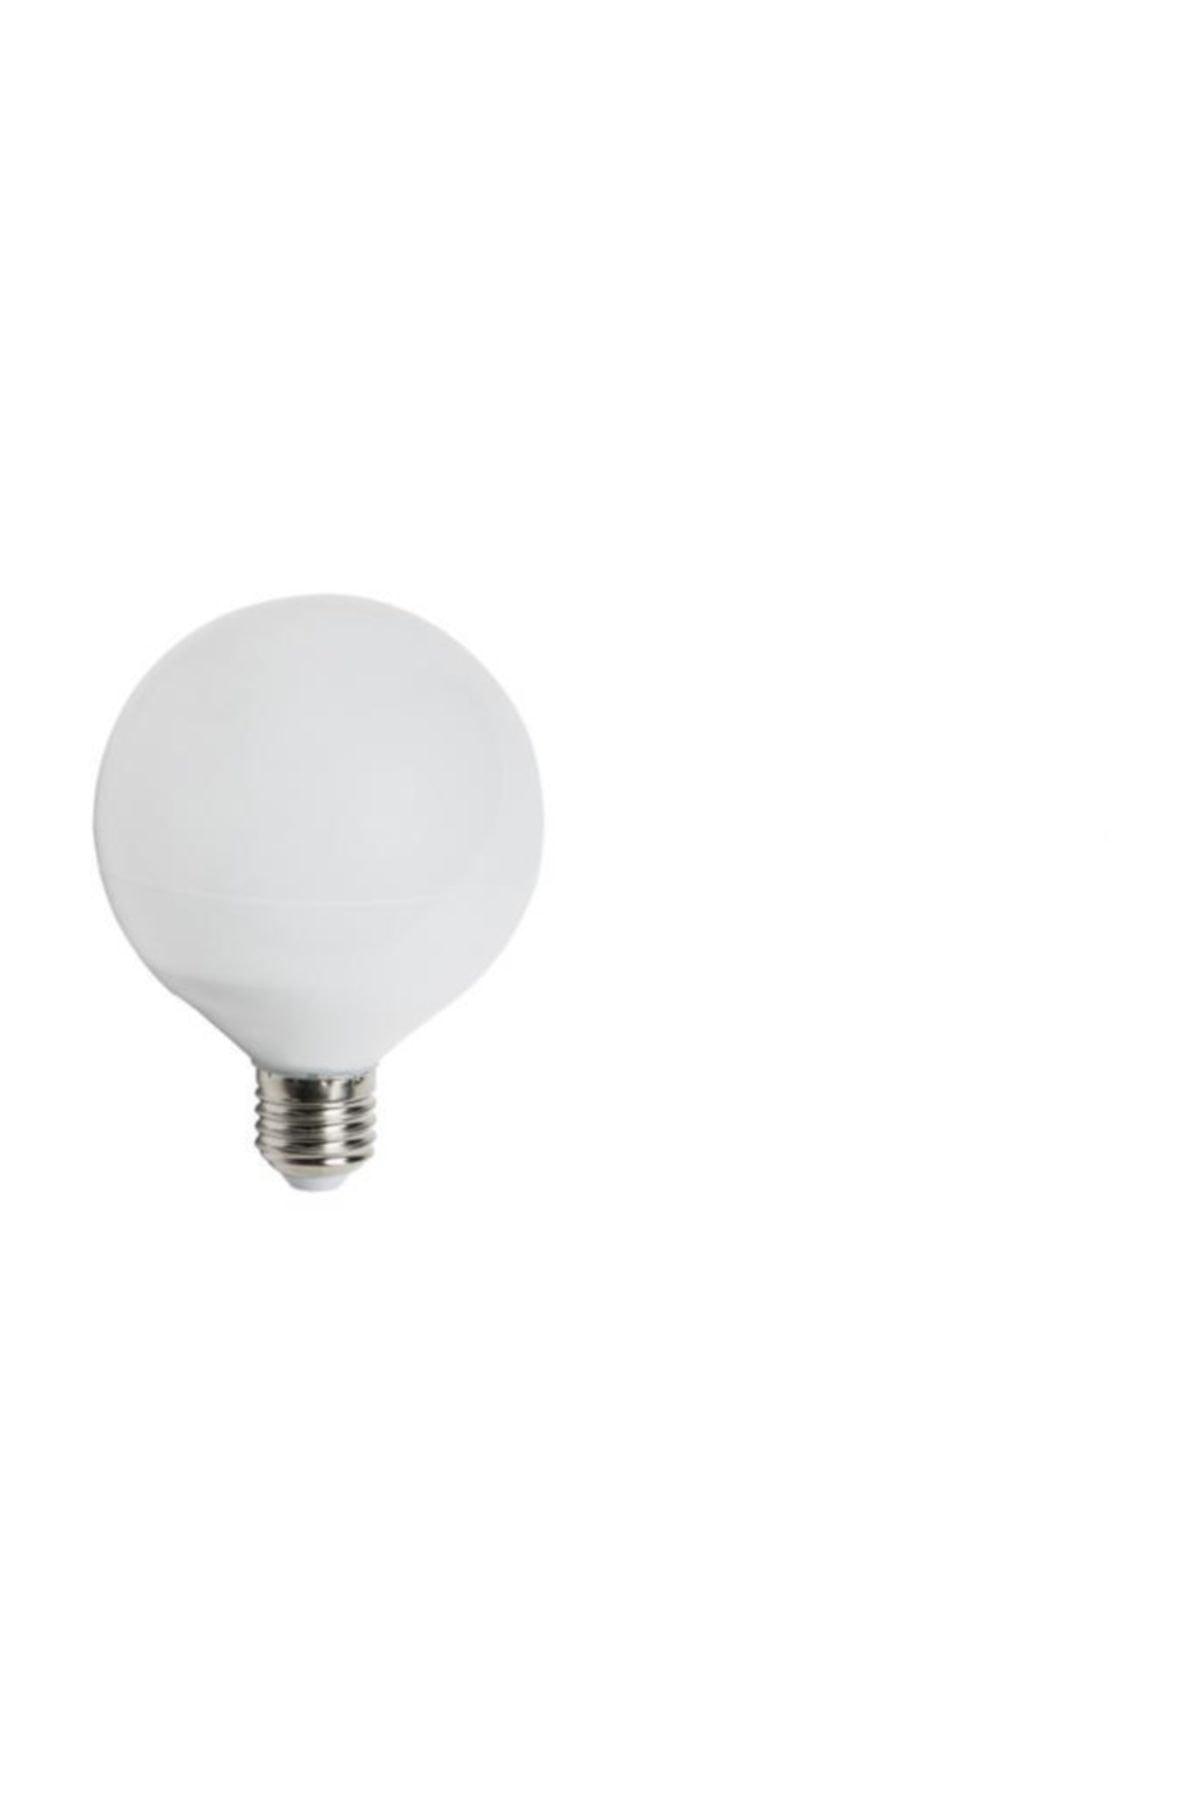 15w Led Bulb White CT-4235 (3 Pcs)